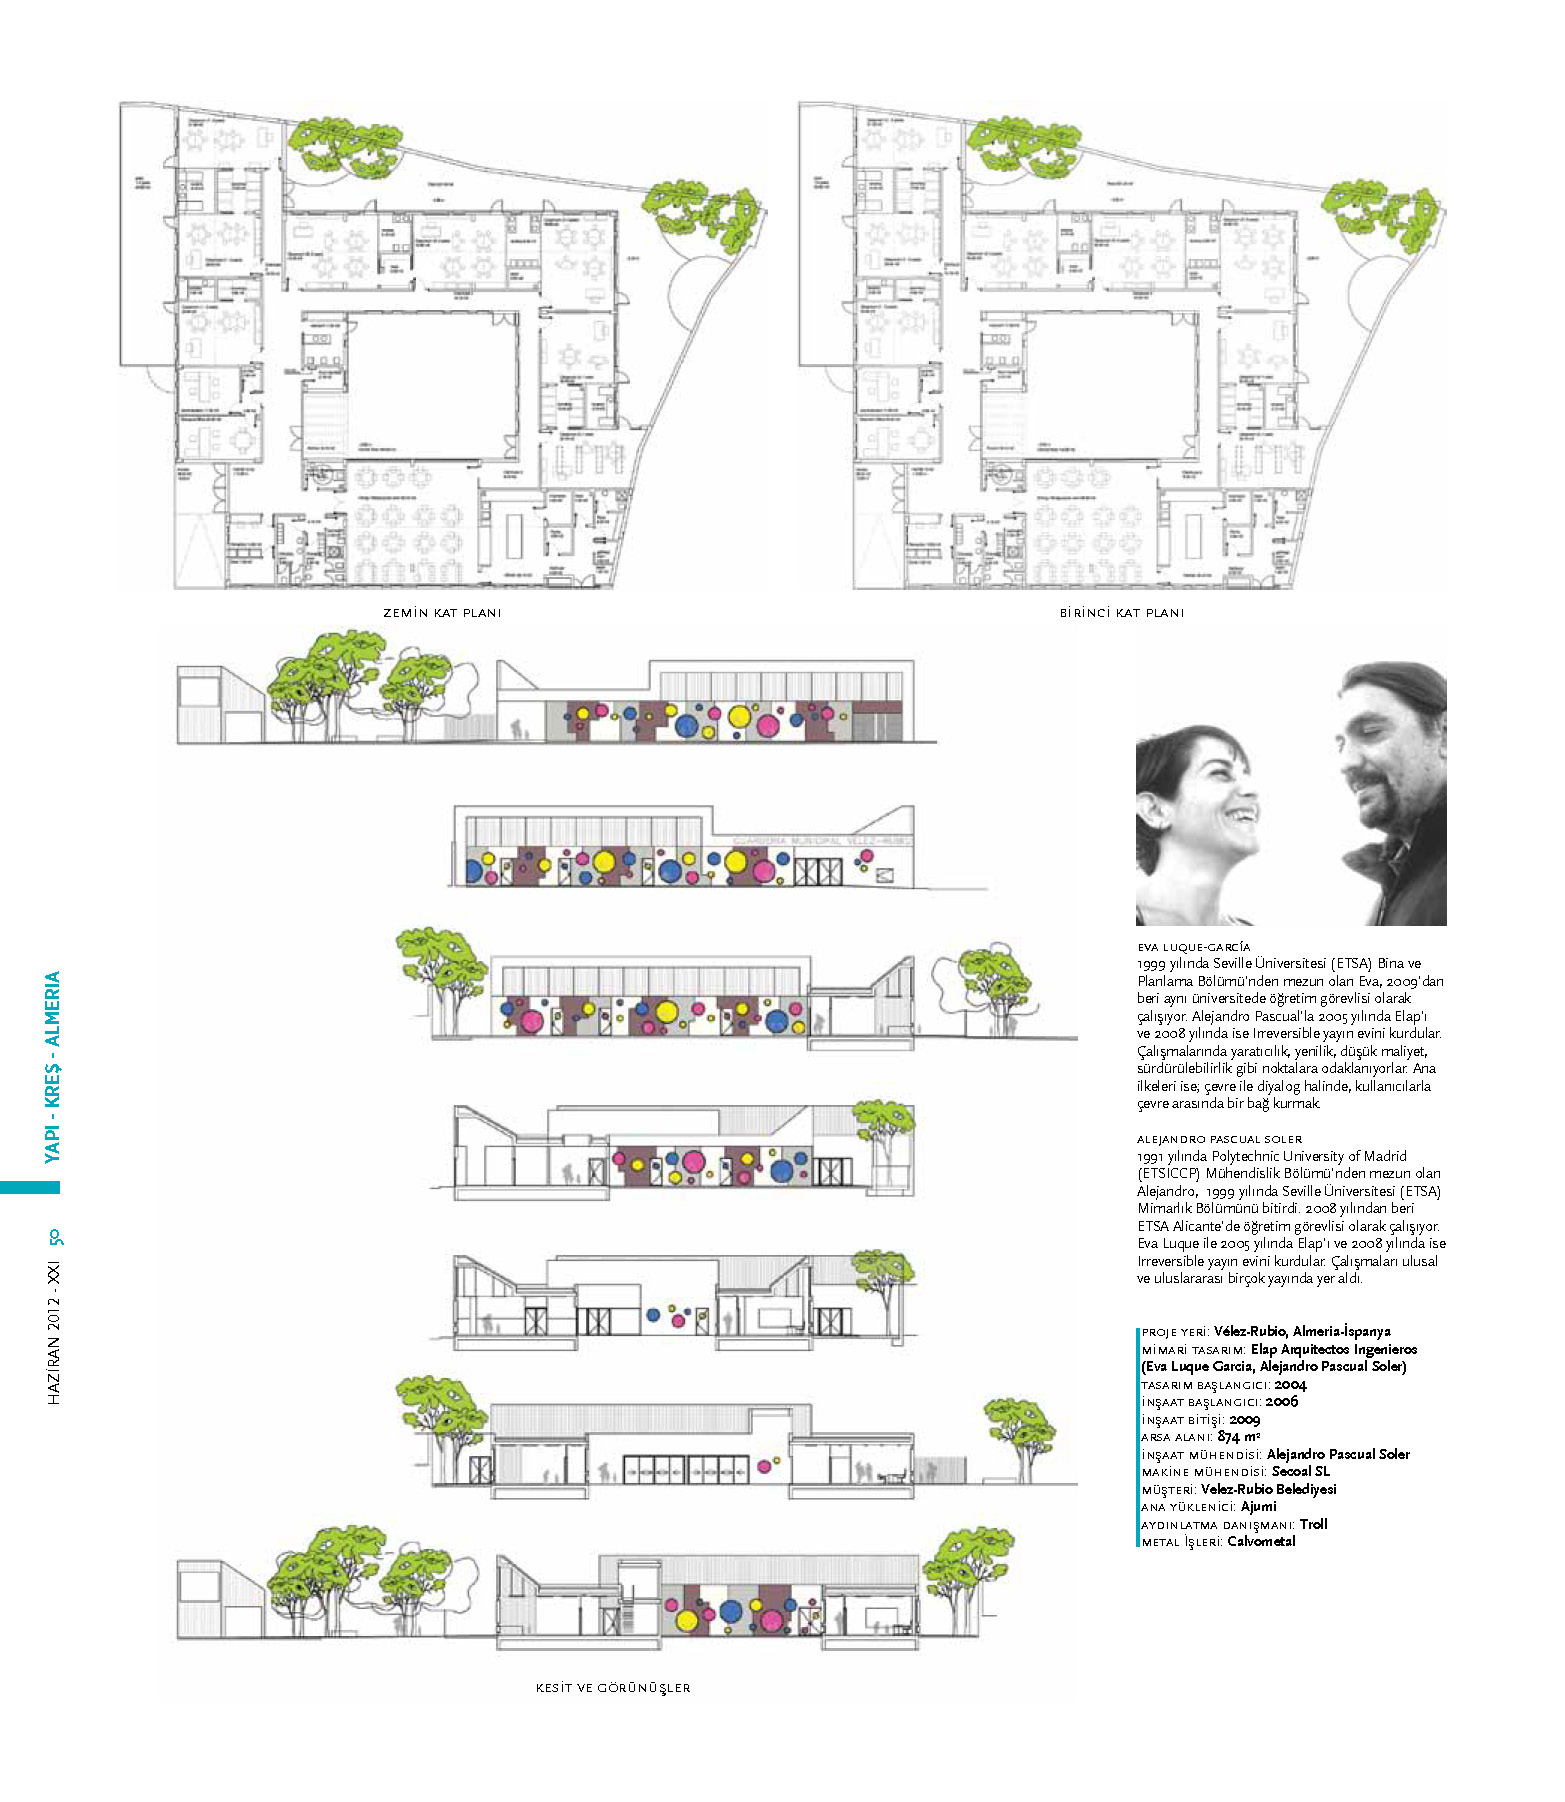 Kindergarten in Velez-Rubio. XXI magazine / XXI Mimarlık, Tasarım ve Mekan - HAZİRAN 2012. İstanbul